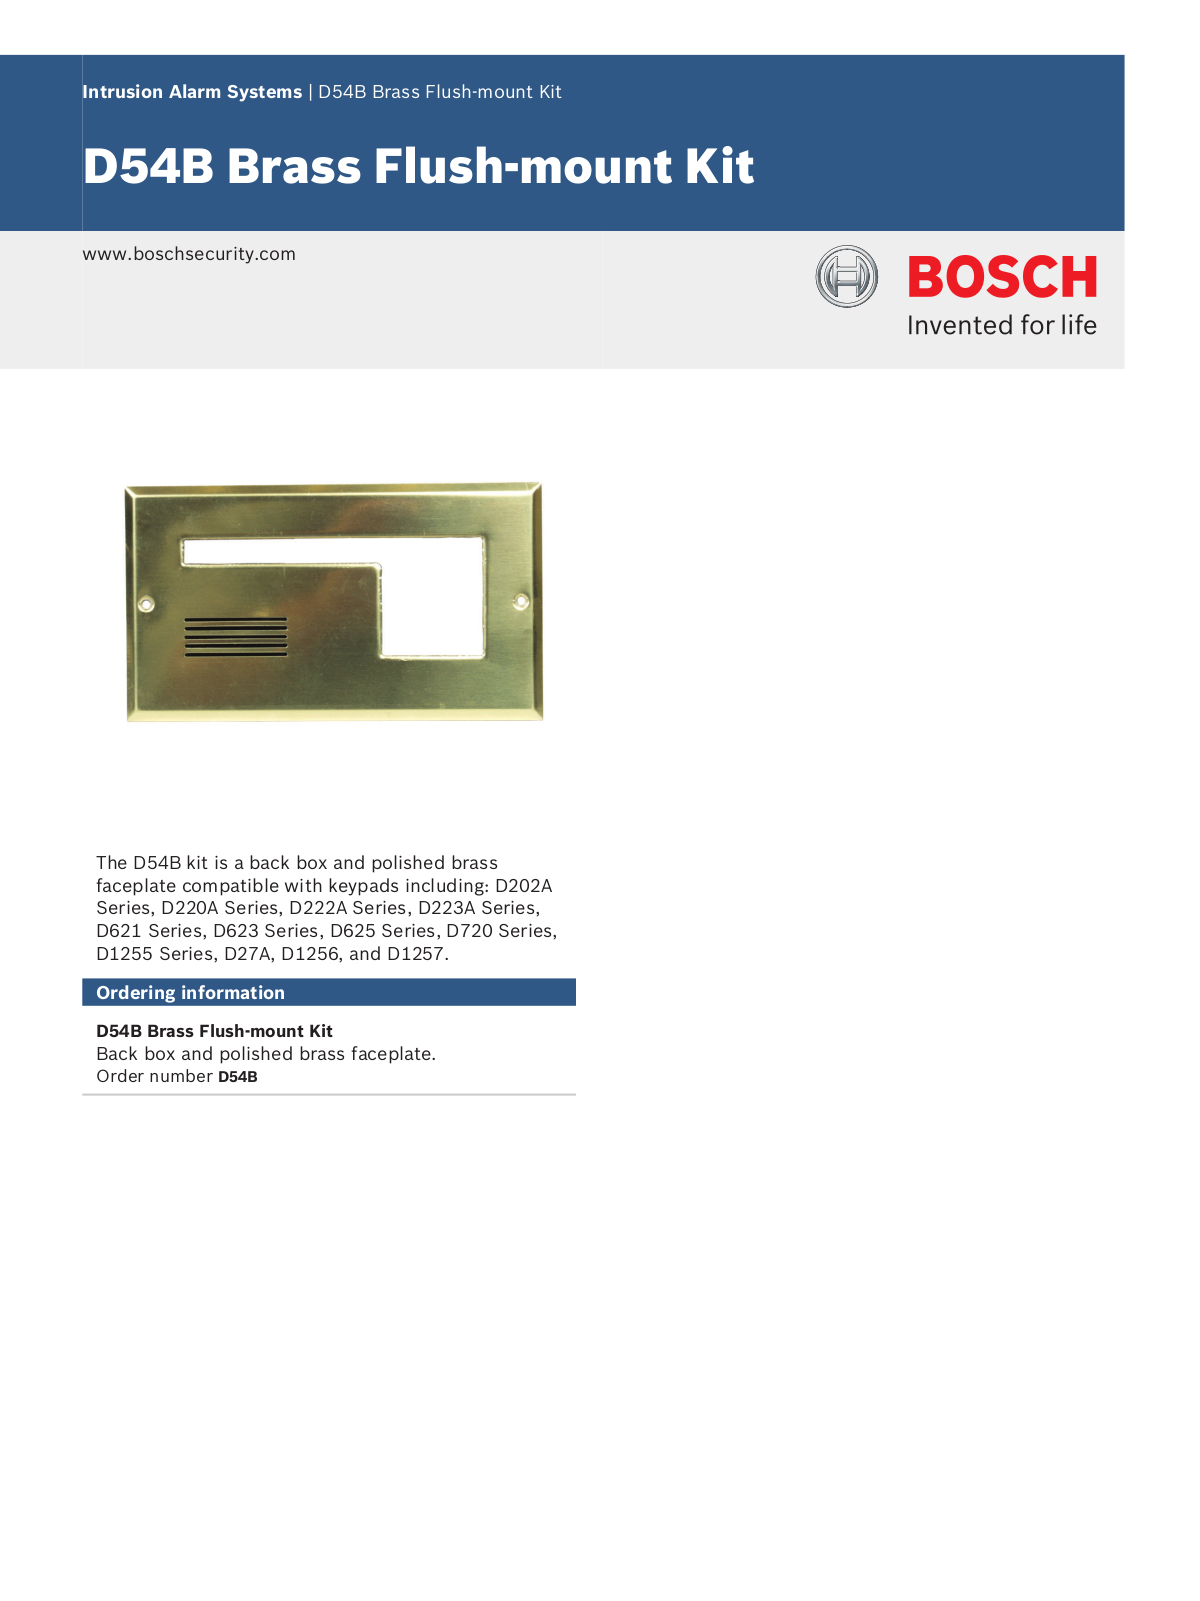 Bosch D54B Specsheet